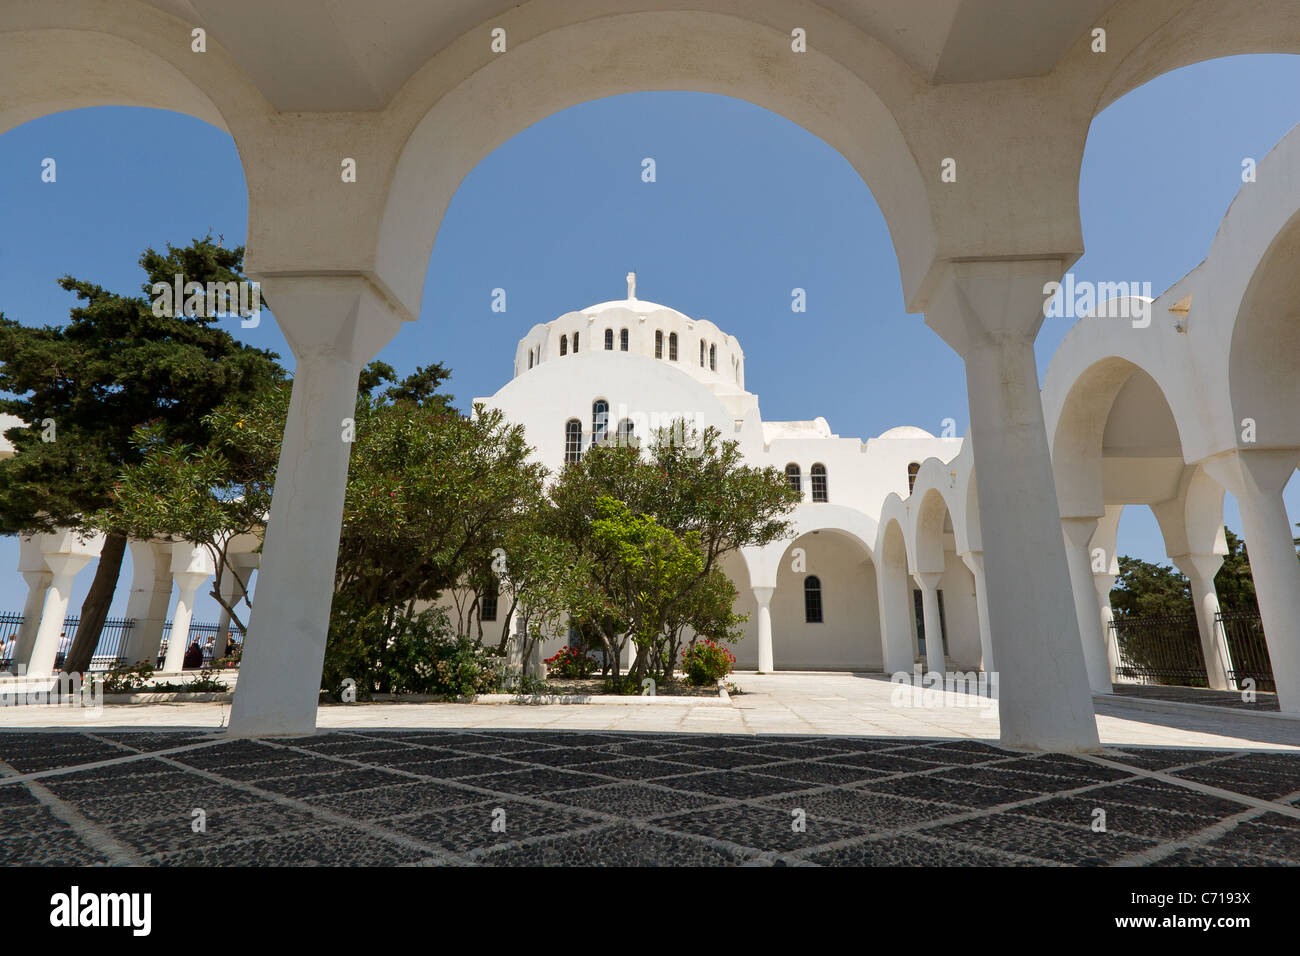 Church exterior, Fira, Santorini, Greece Stock Photo